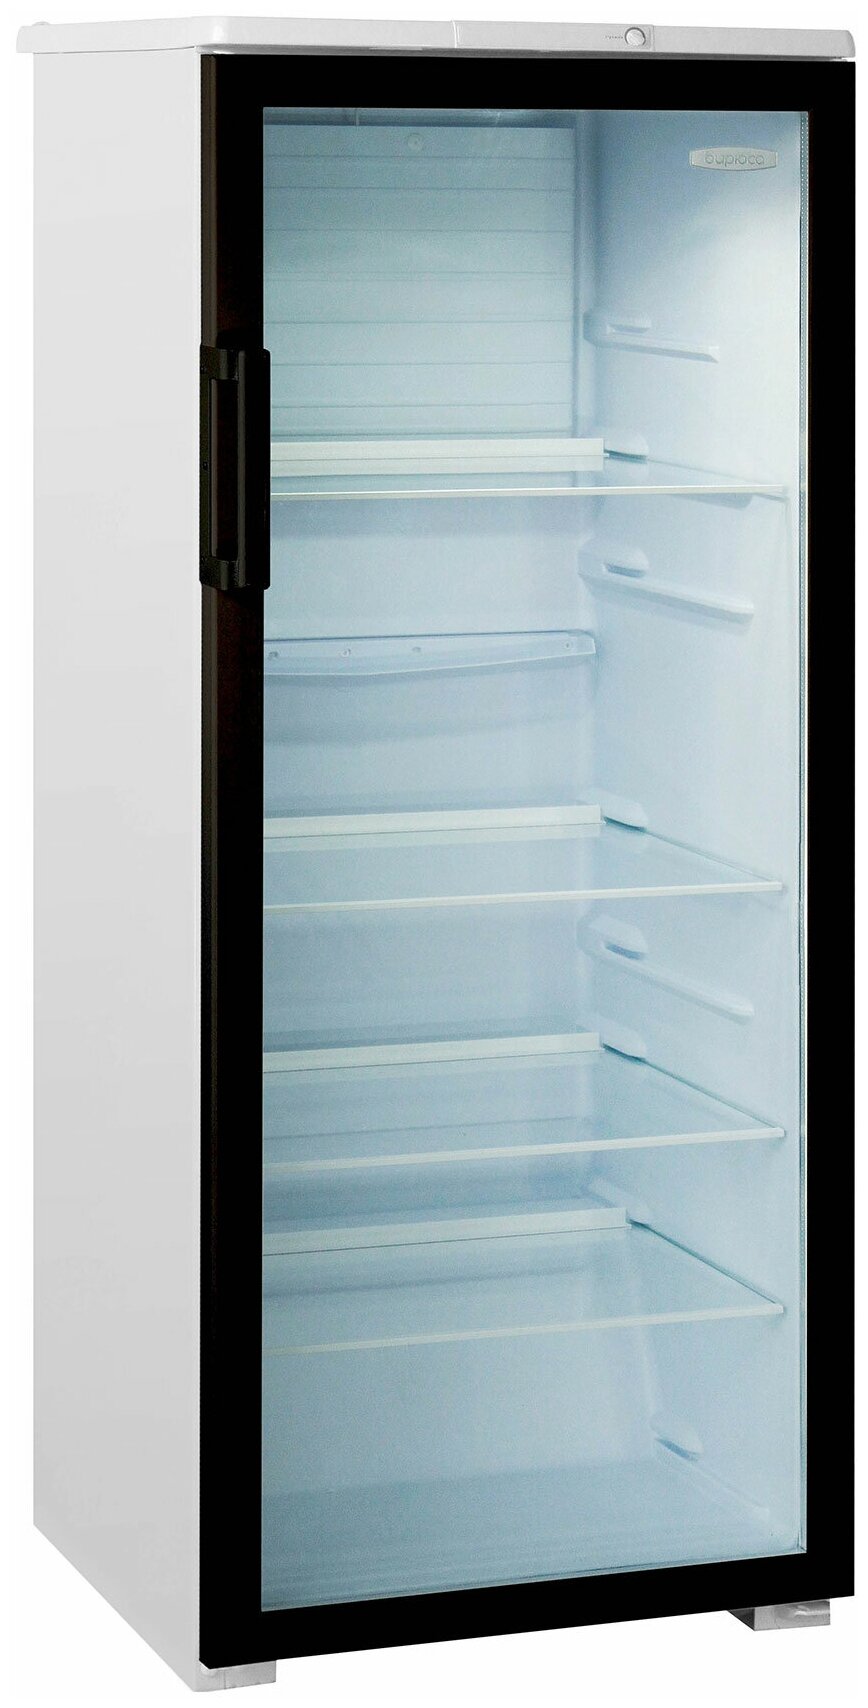 Холодильная витрина Бирюса Б-B290